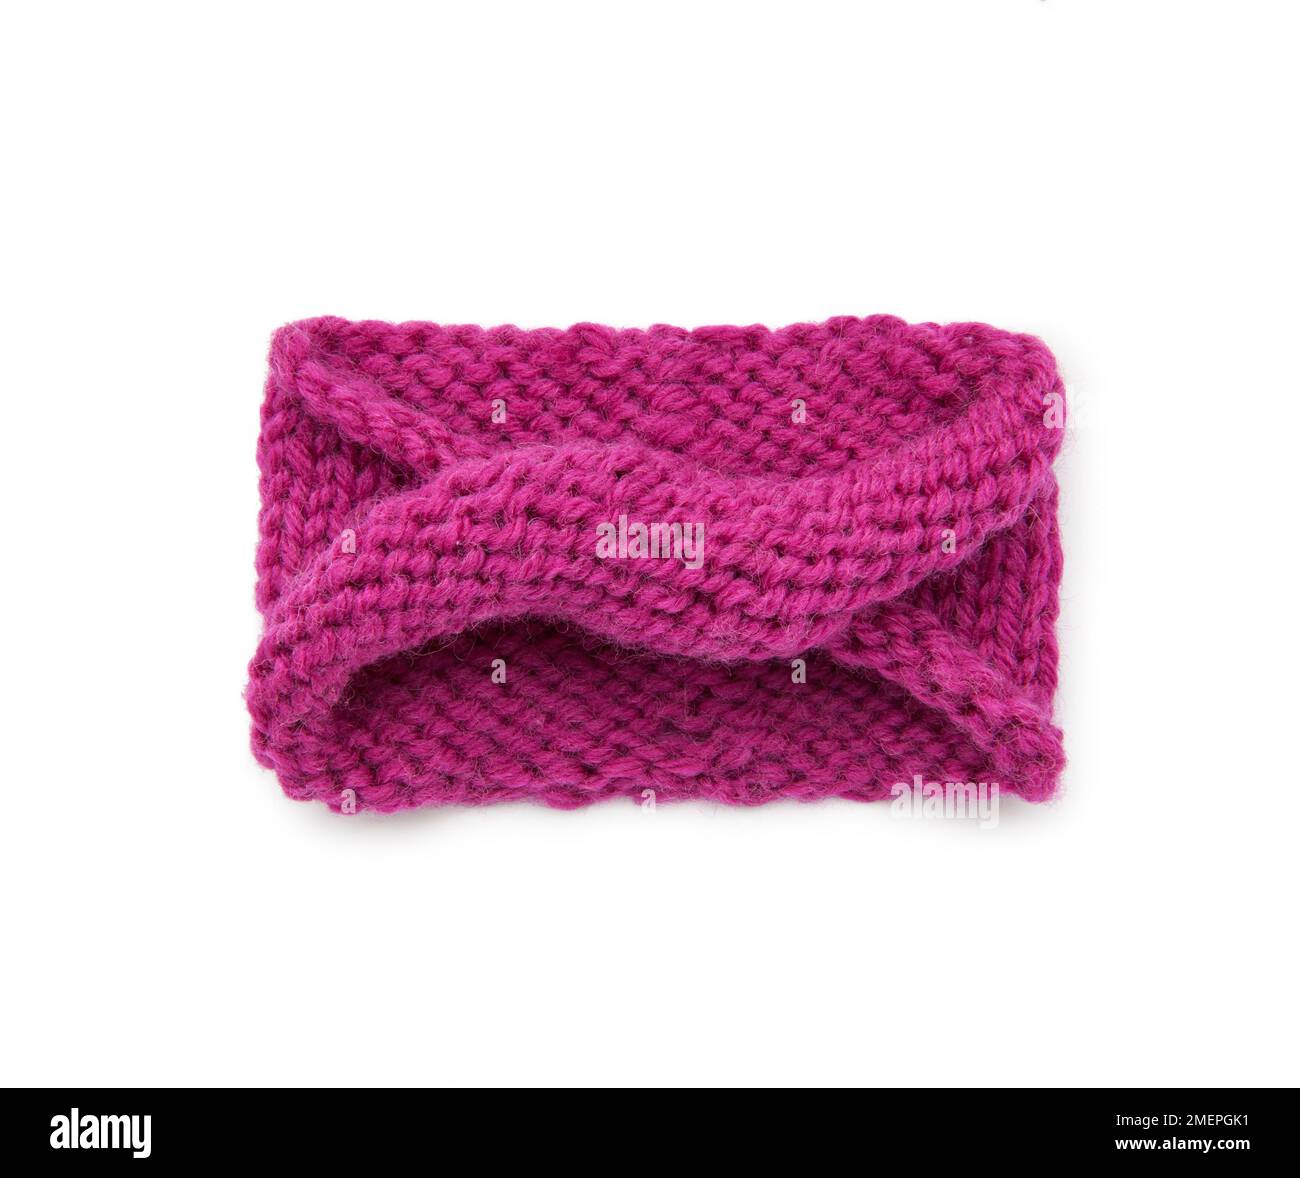 Exemple de travail avec une aiguille à tricoter circulaire - tricoter une boucle de mobus Banque D'Images